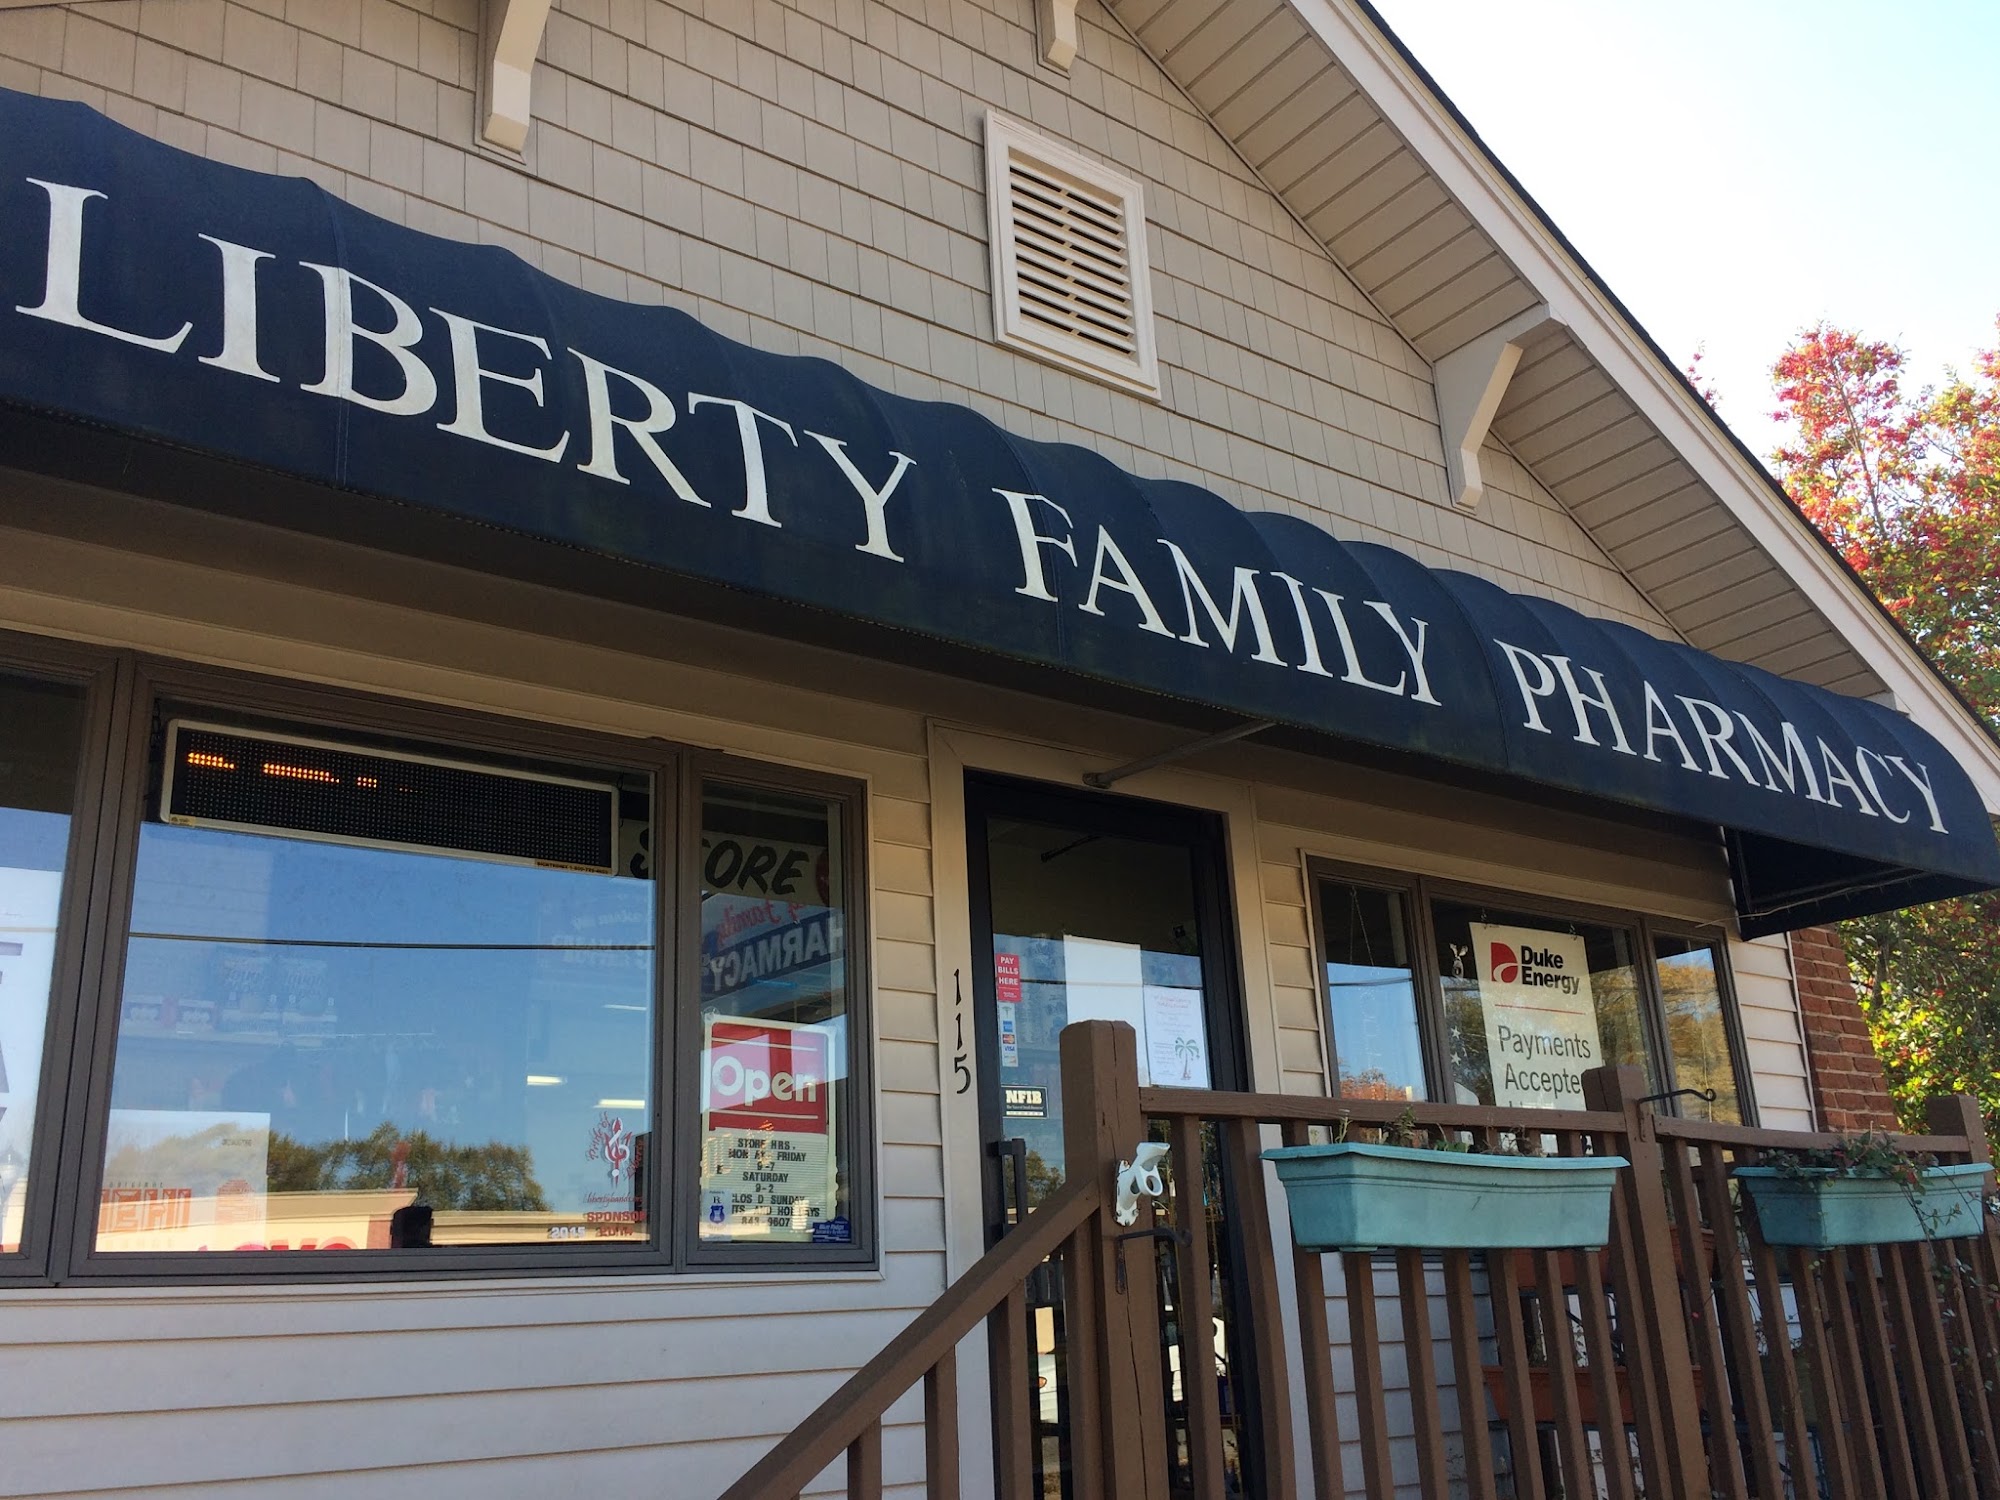 Liberty Family Pharmacy